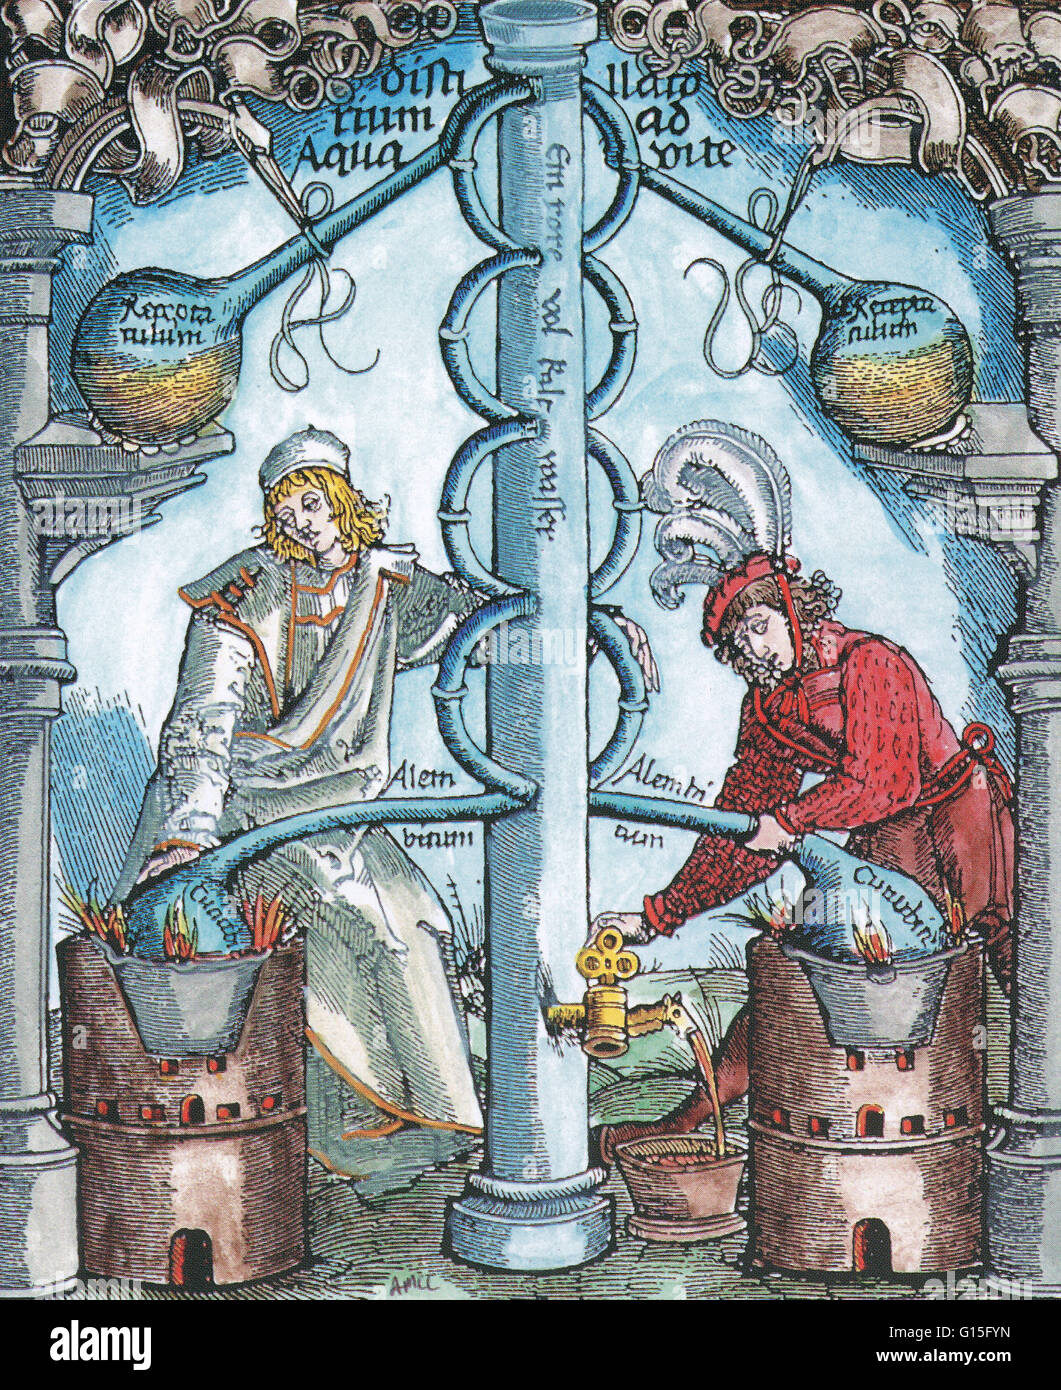 Der Alchemist (in rot) und seine "mystische Schwester" destillieren "Wasser des Lebens". Alchemie war die pseudo-wissenschaftliche Vorläufer der Chemie. Alchemisten suchten unter anderen Beschäftigungen Formeln, die unedle Metalle in Gold verwandeln würde. Stockfoto